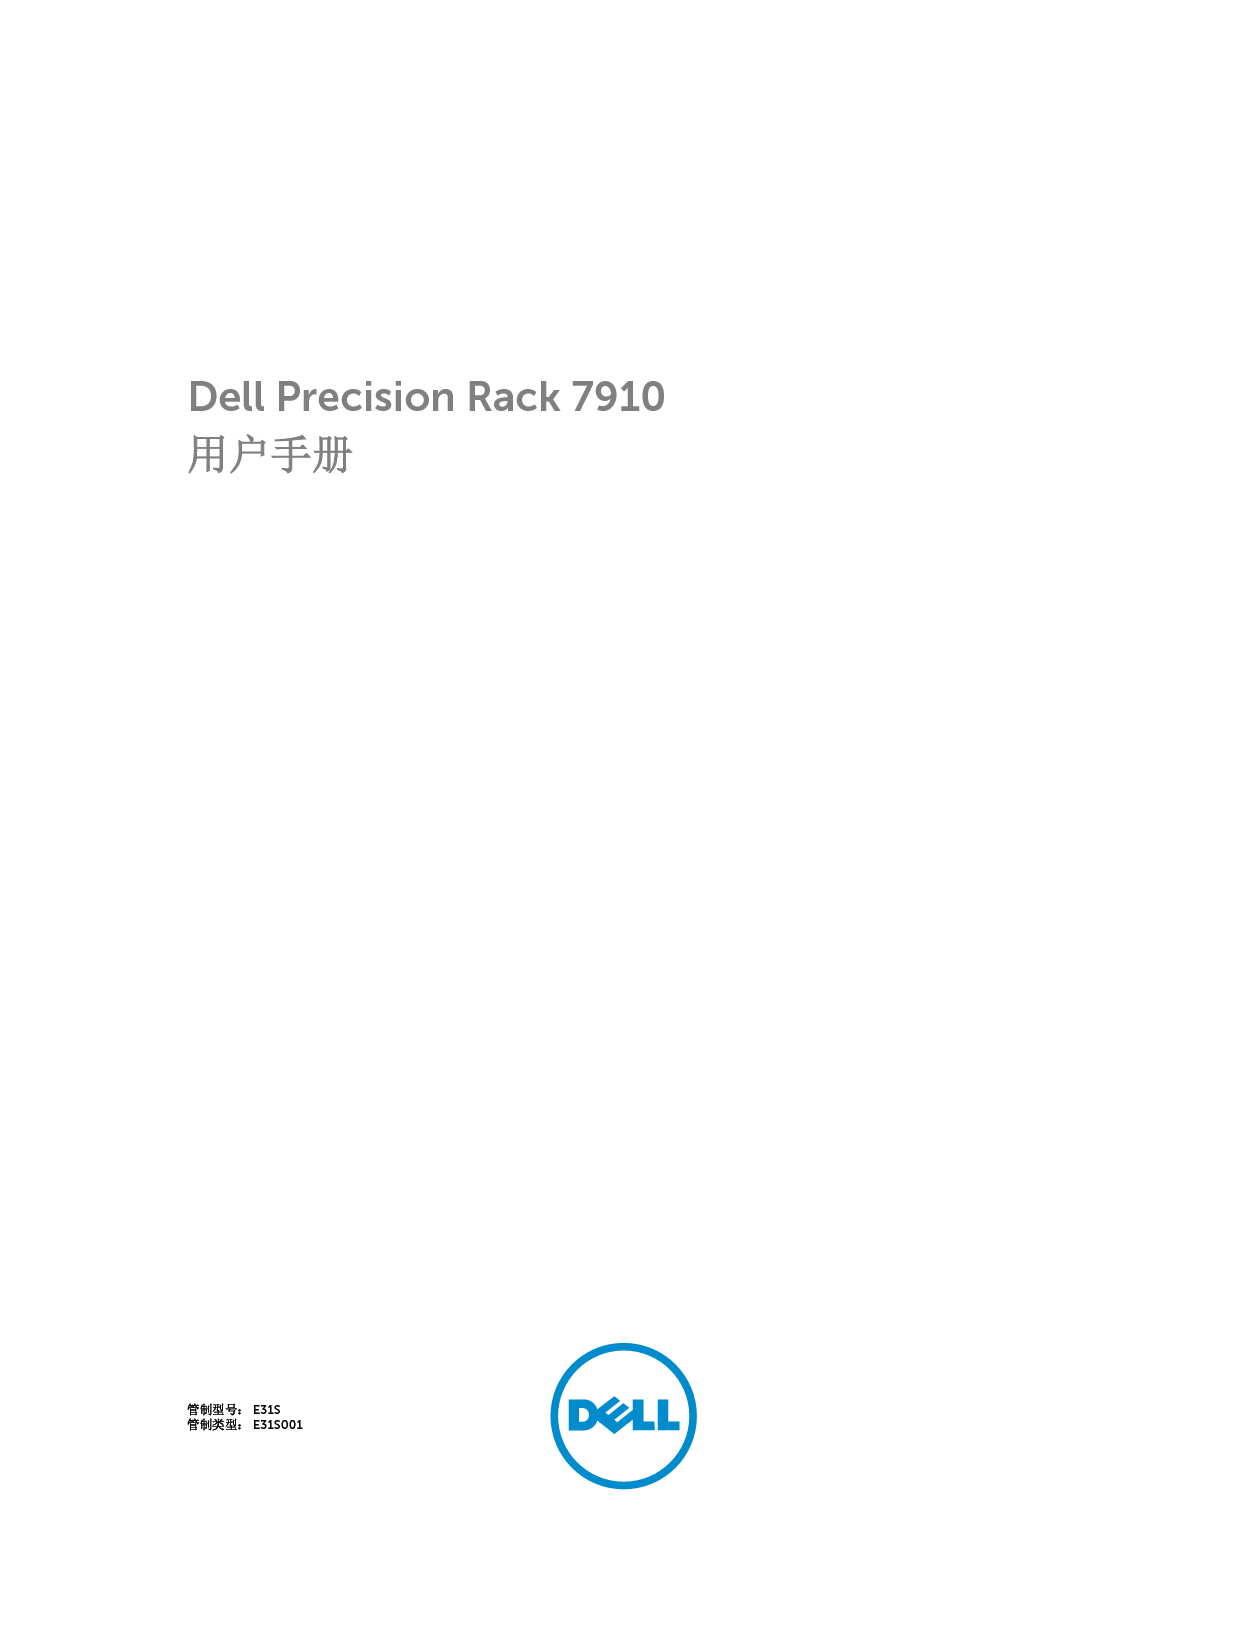 戴尔 Dell Precision R7910 用户手册 封面